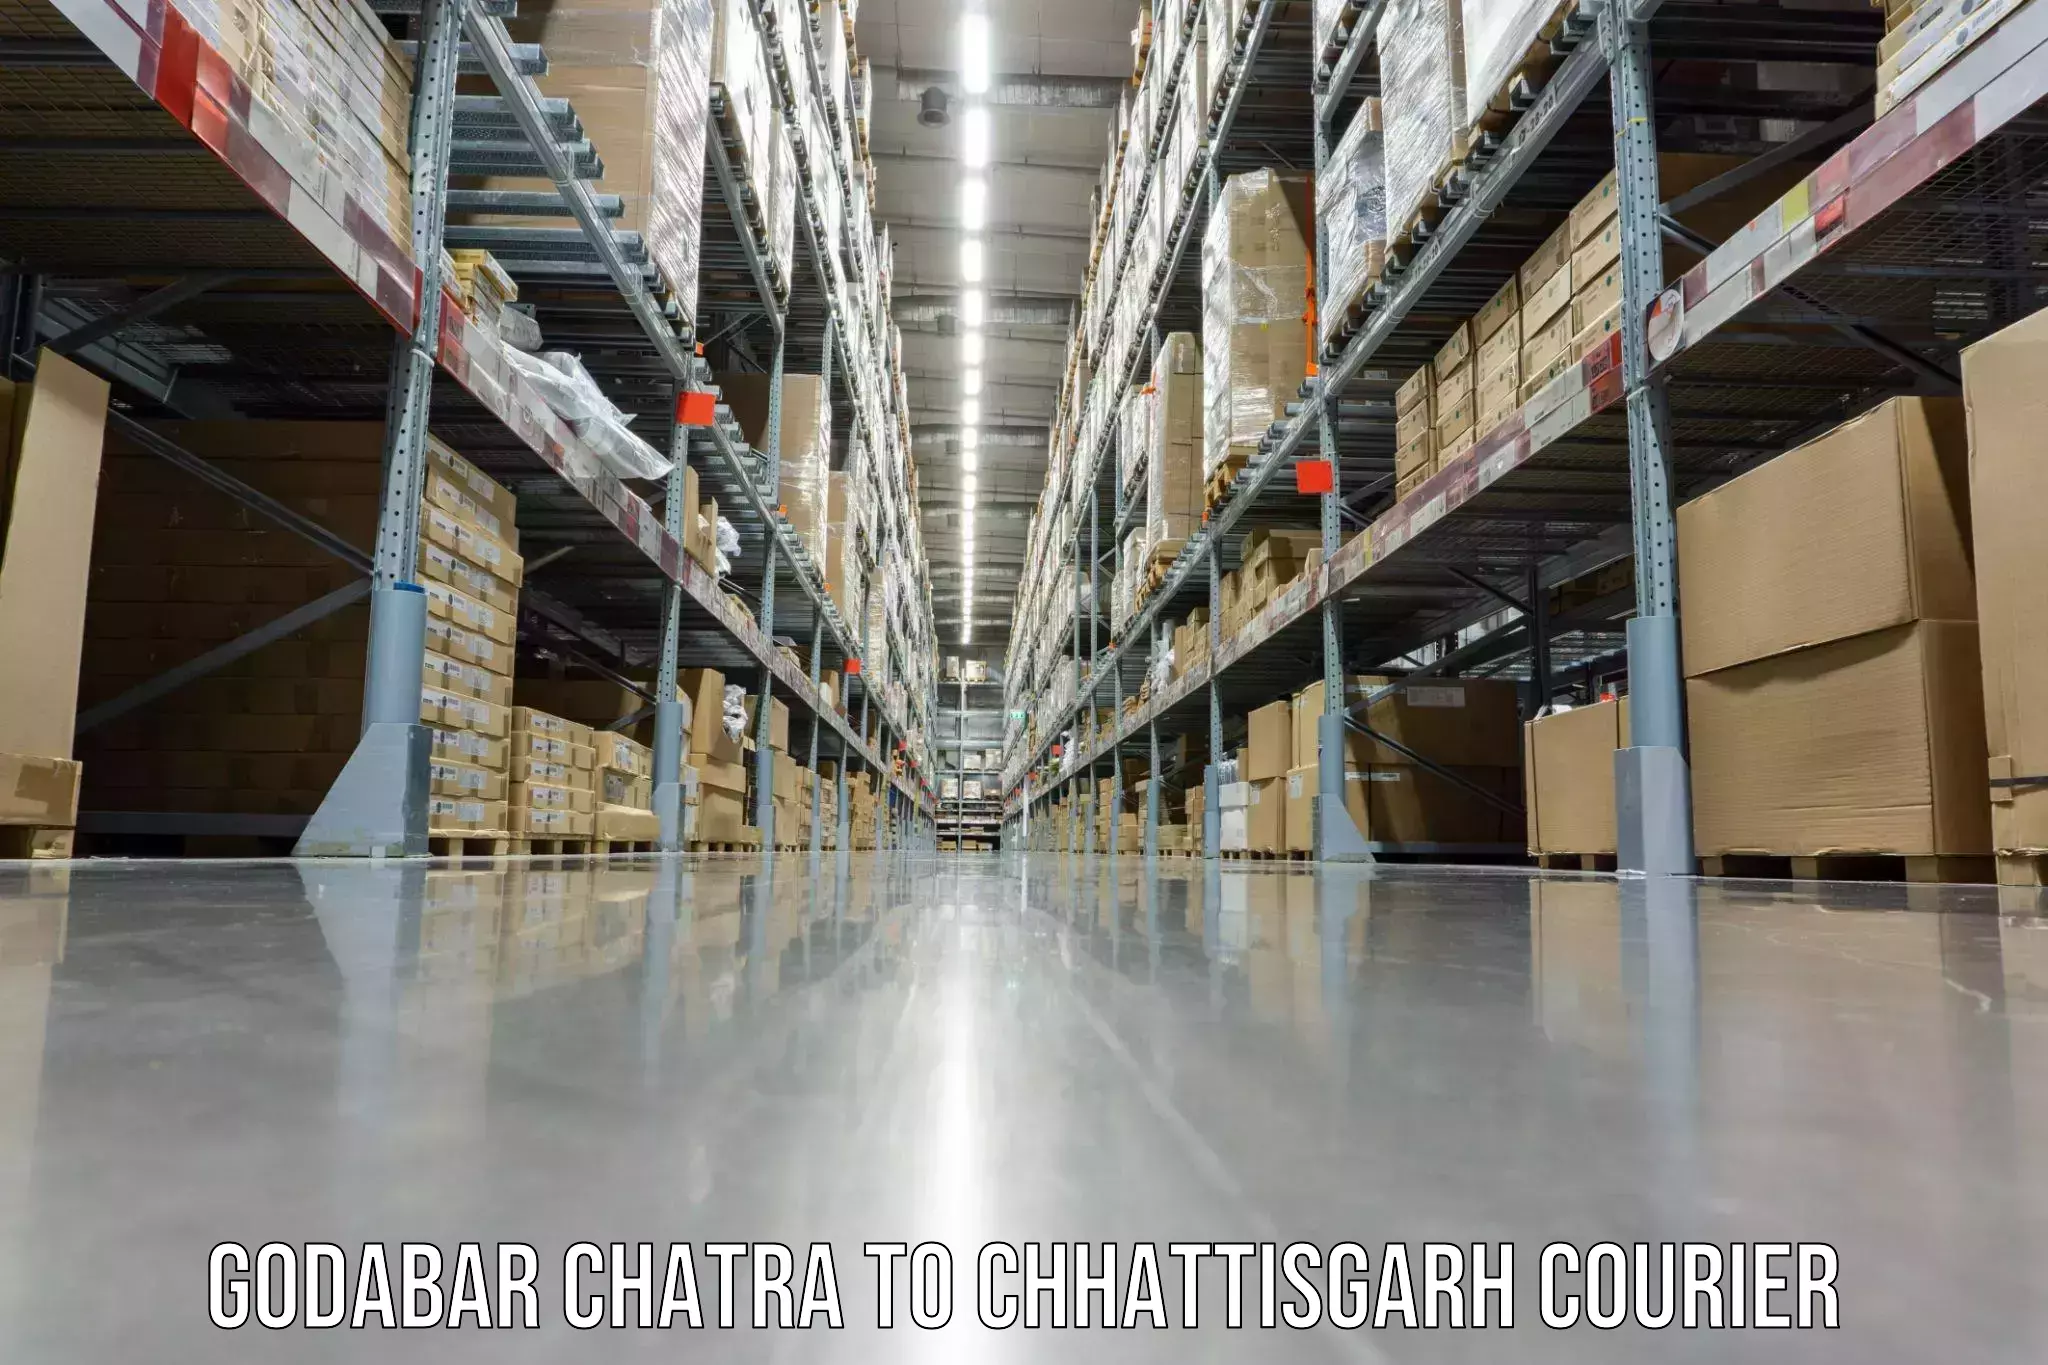 Quality furniture shipping Godabar Chatra to Bijapur Chhattisgarh